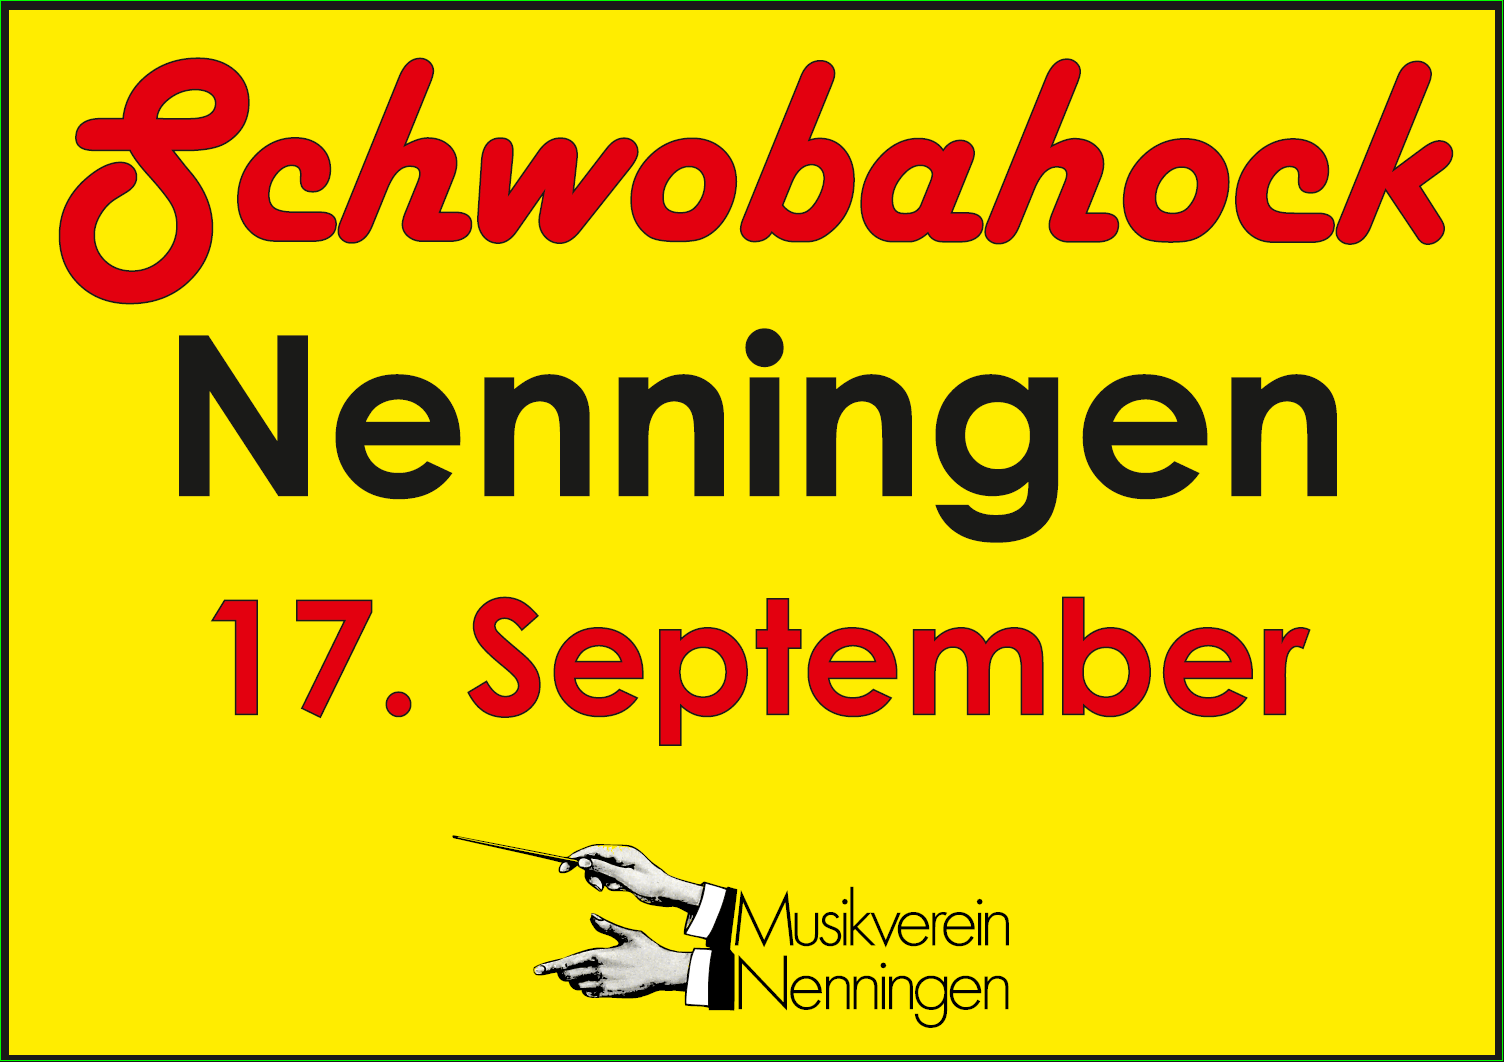 Nenninger Schwobahock